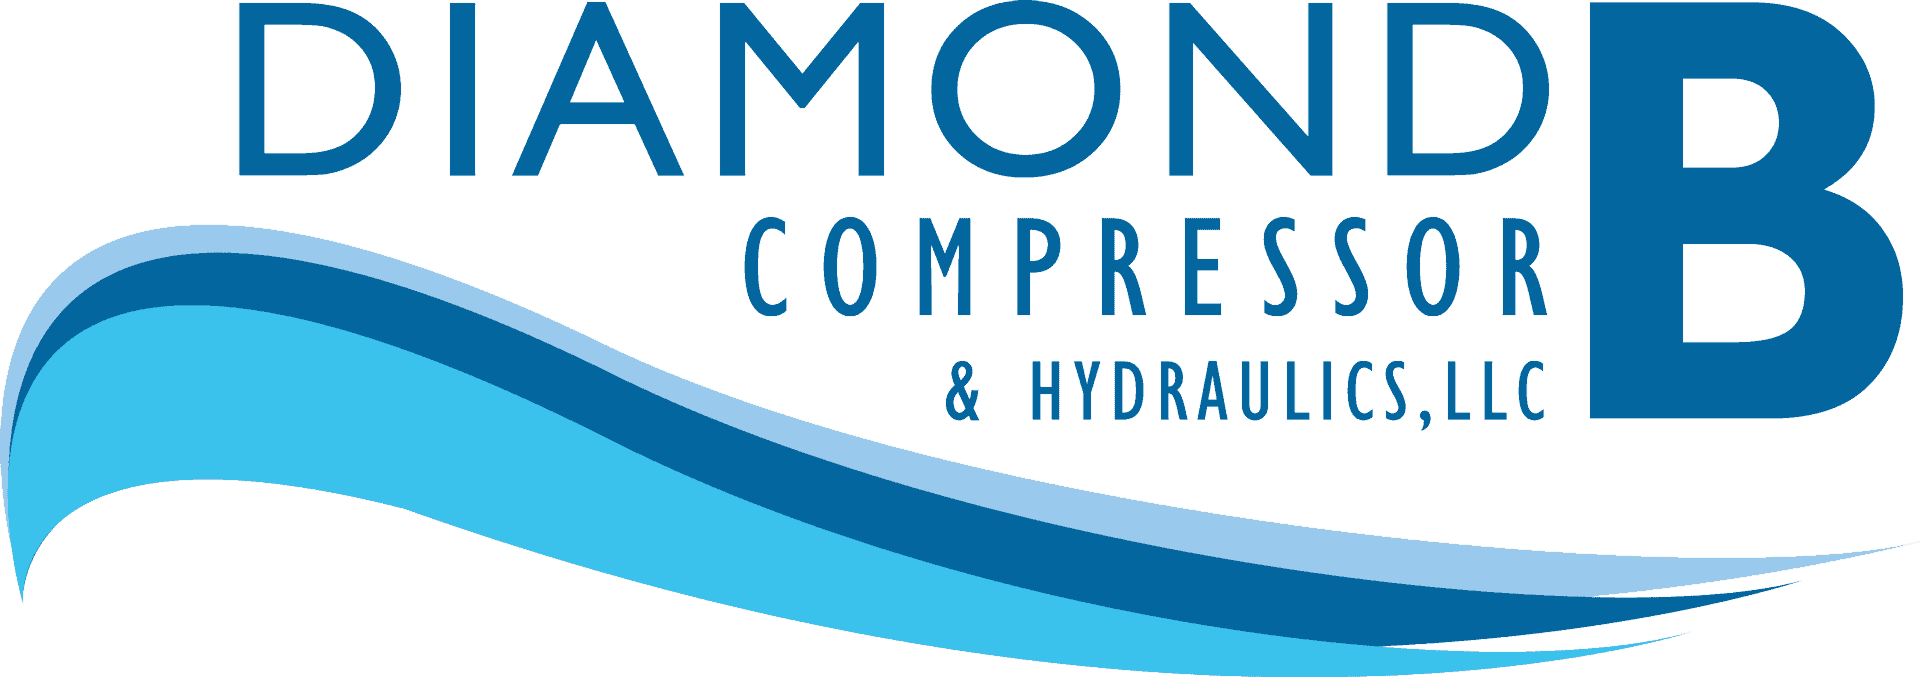 Diamond B Compressor